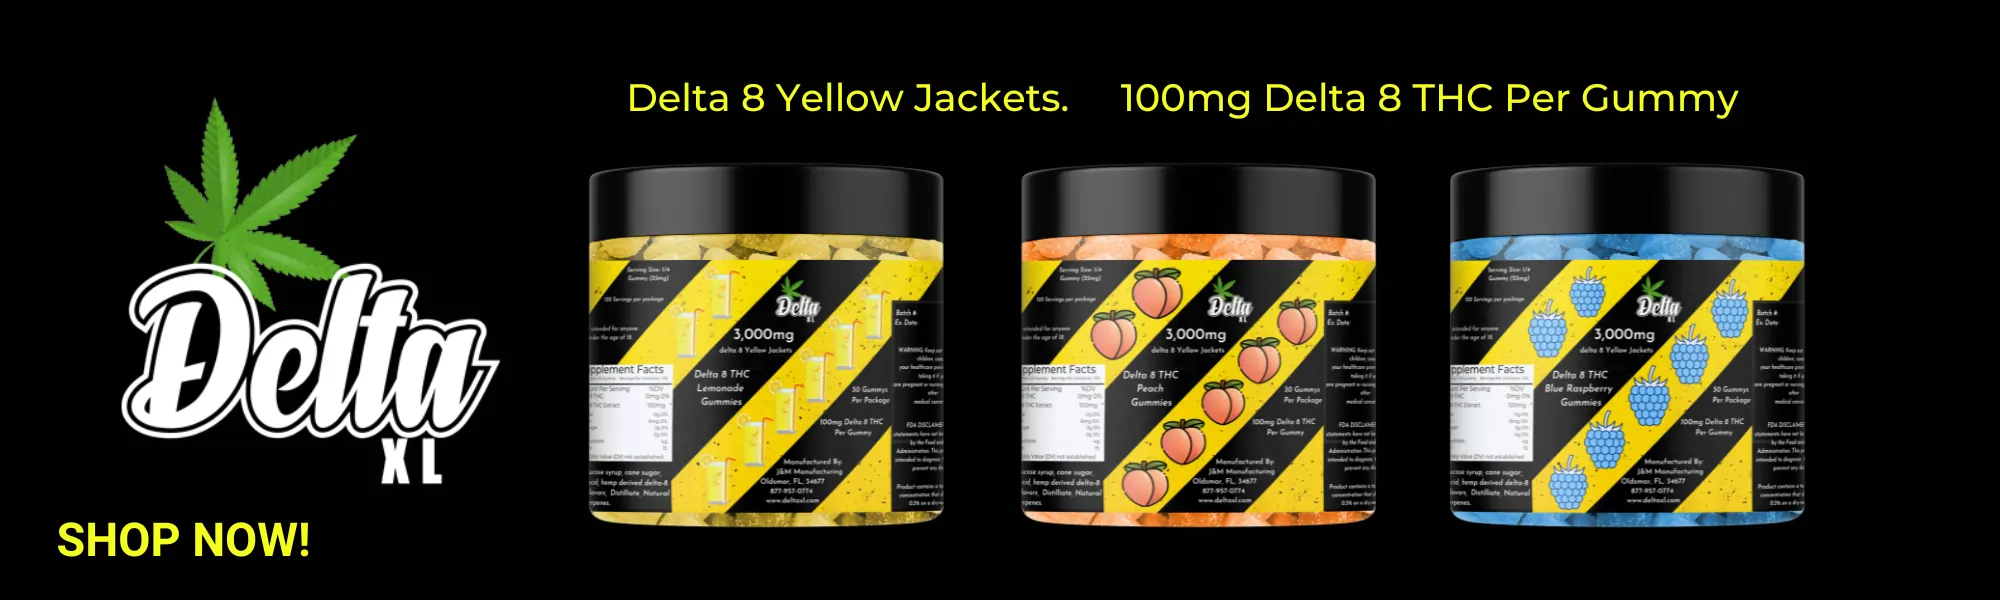 delta 8 yellow jackets gummies banner